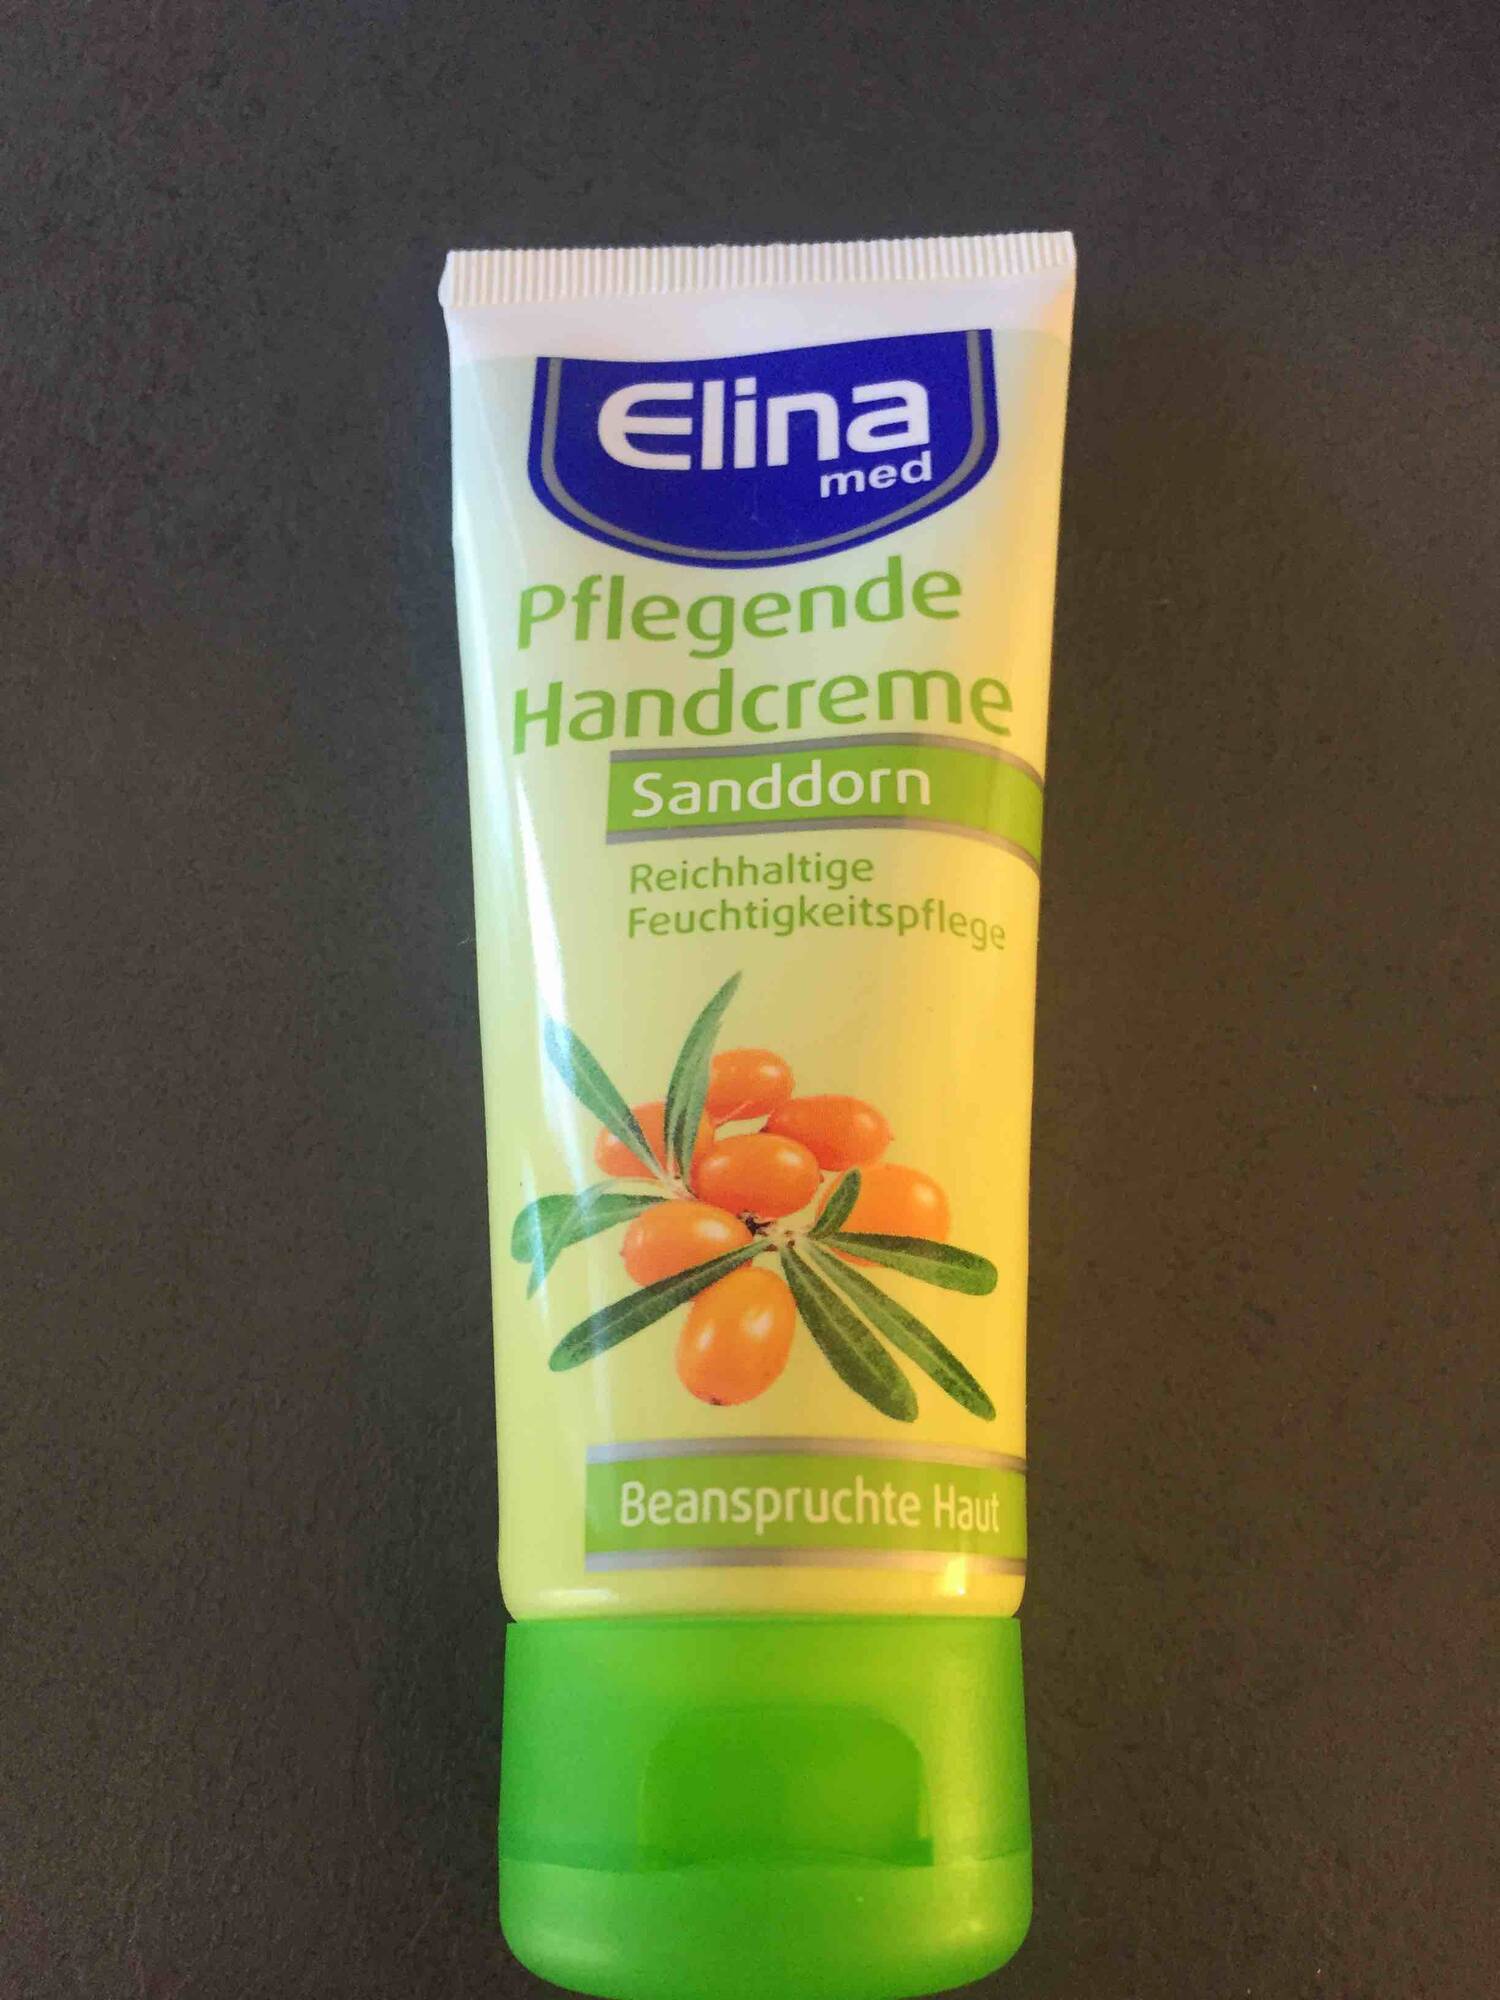 ELINA - Sanddorn - Pflegende handcreme